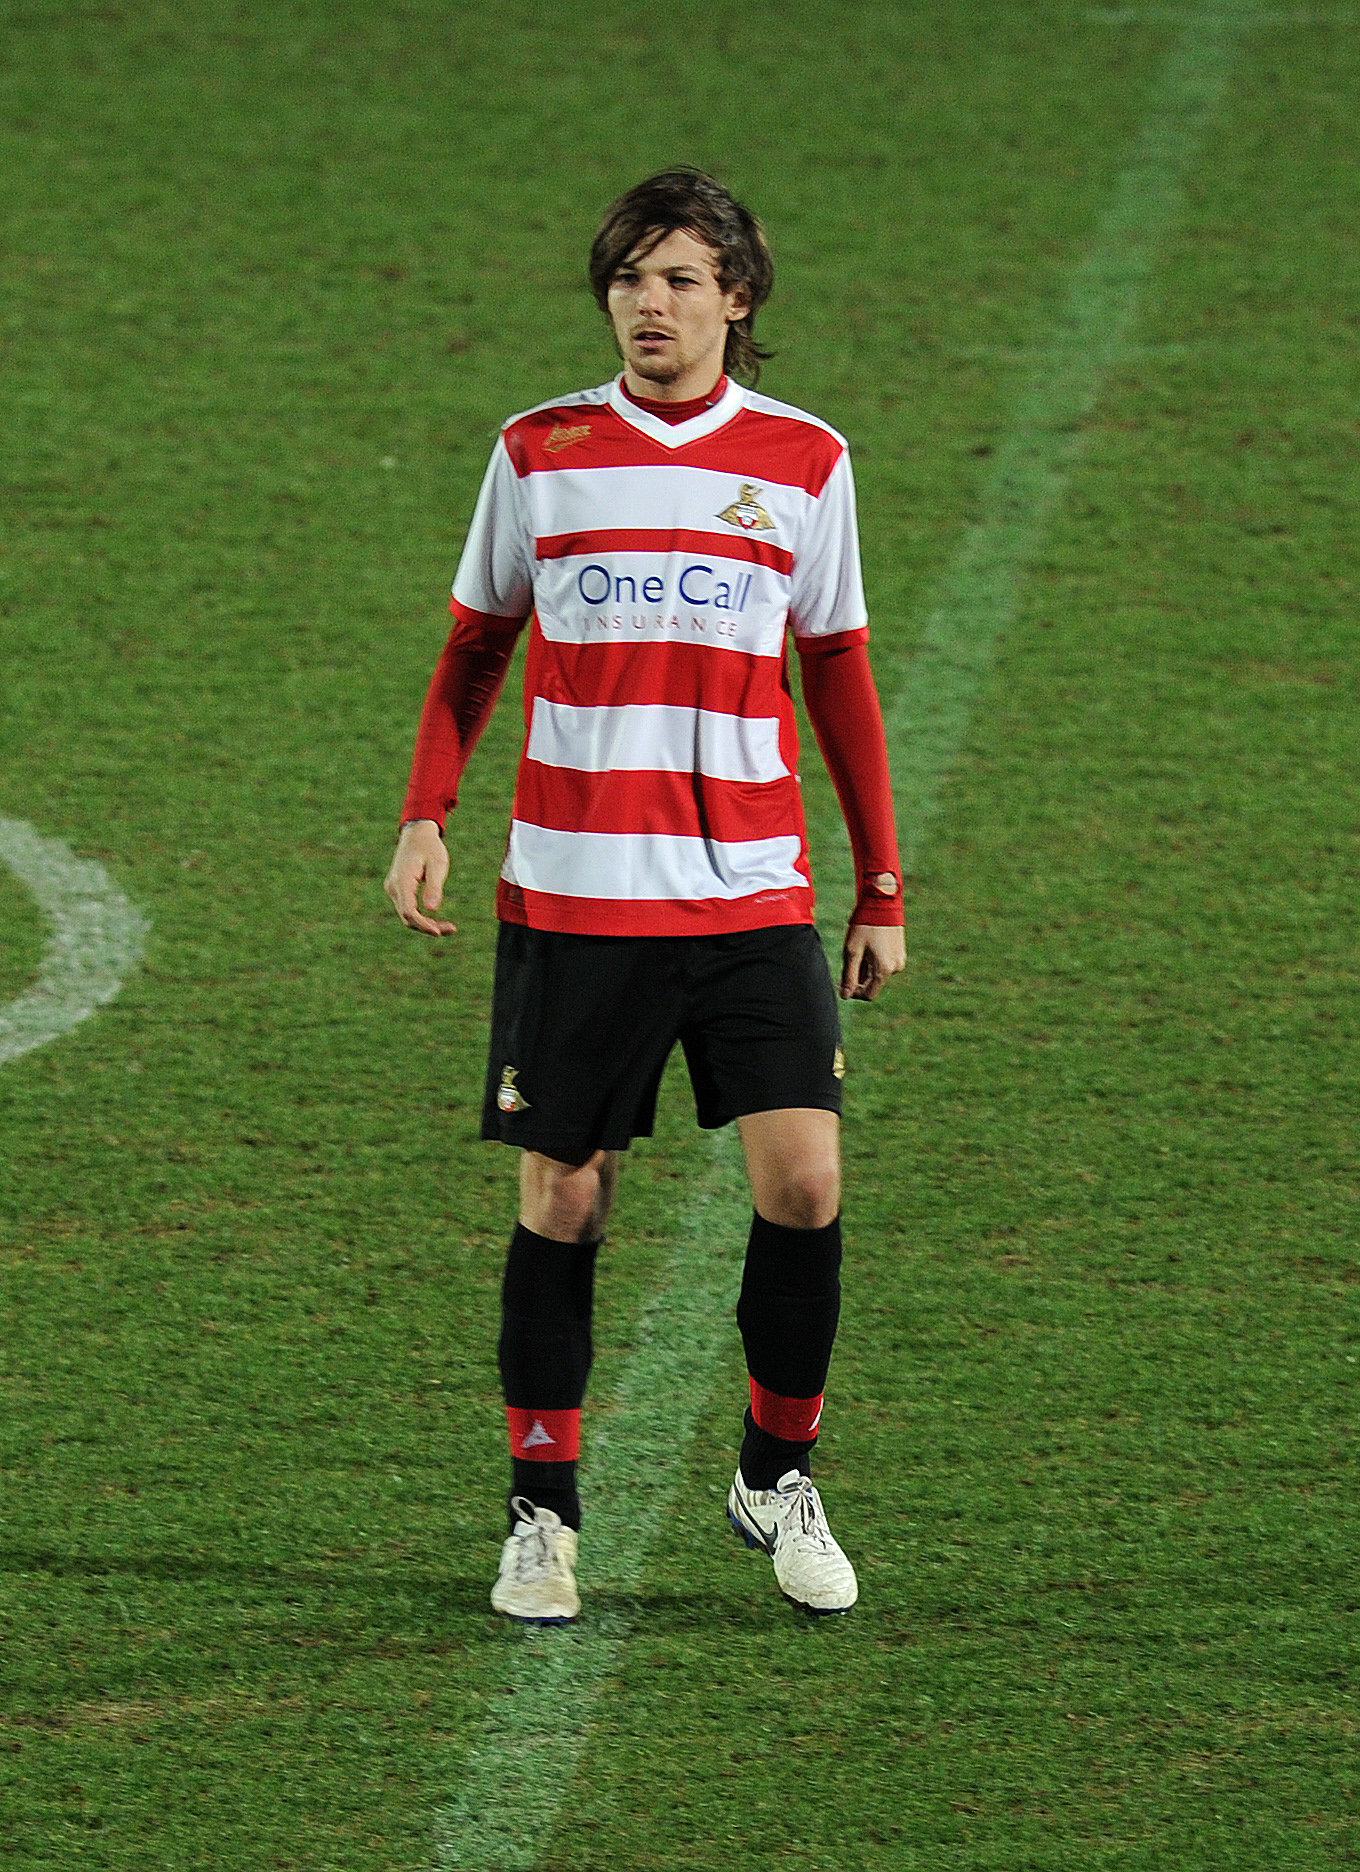 Louis yang hobi main bola sempat ditawari peran sebagai pesepak bola dalam film Hollywood © Splashnews.com